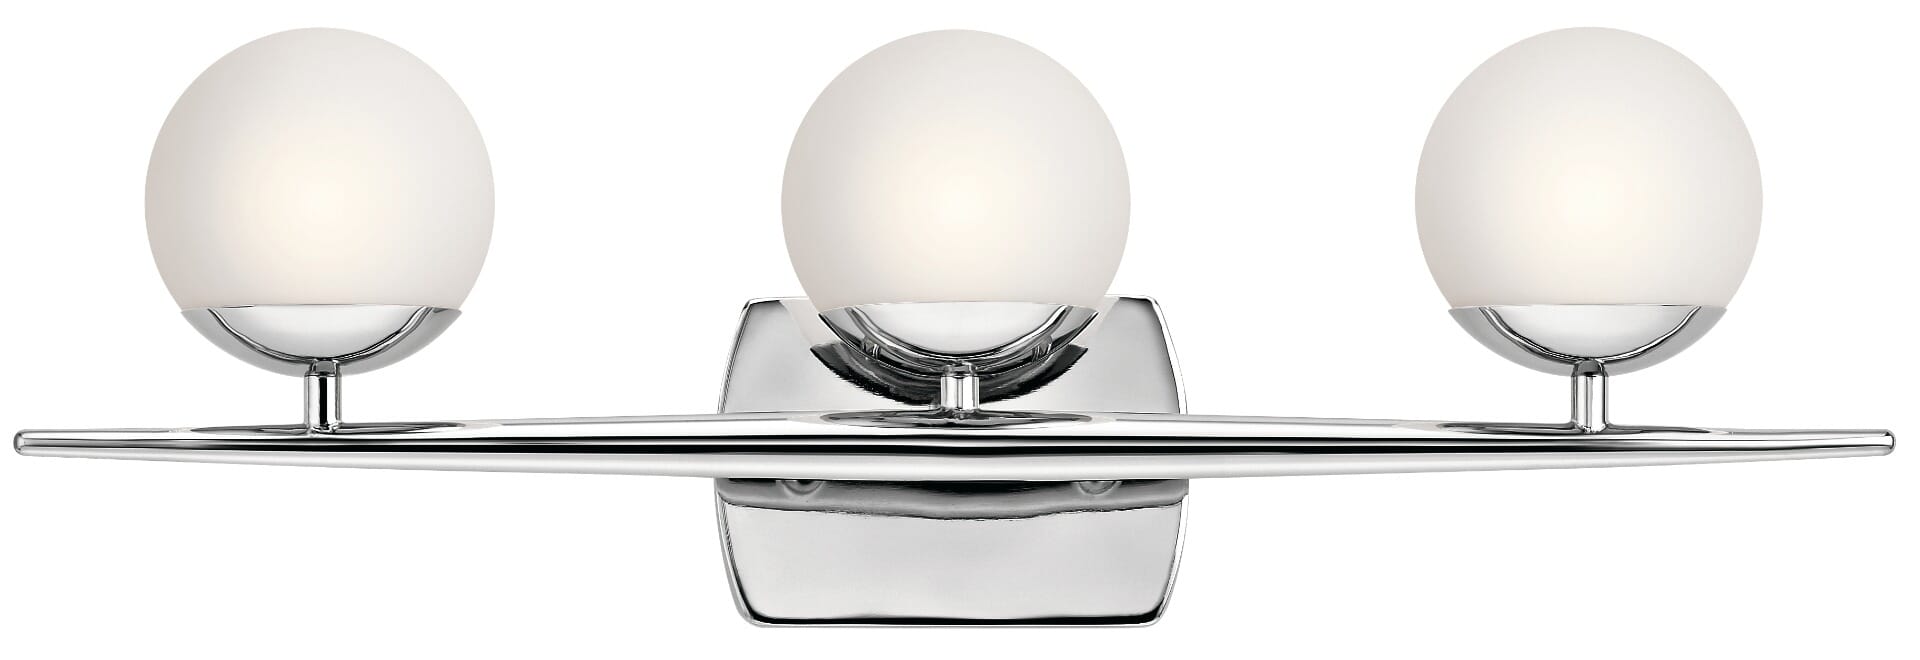 Jasper 3-Light Bathroom Vanity Light in Chrome -  Kichler, 45582CH